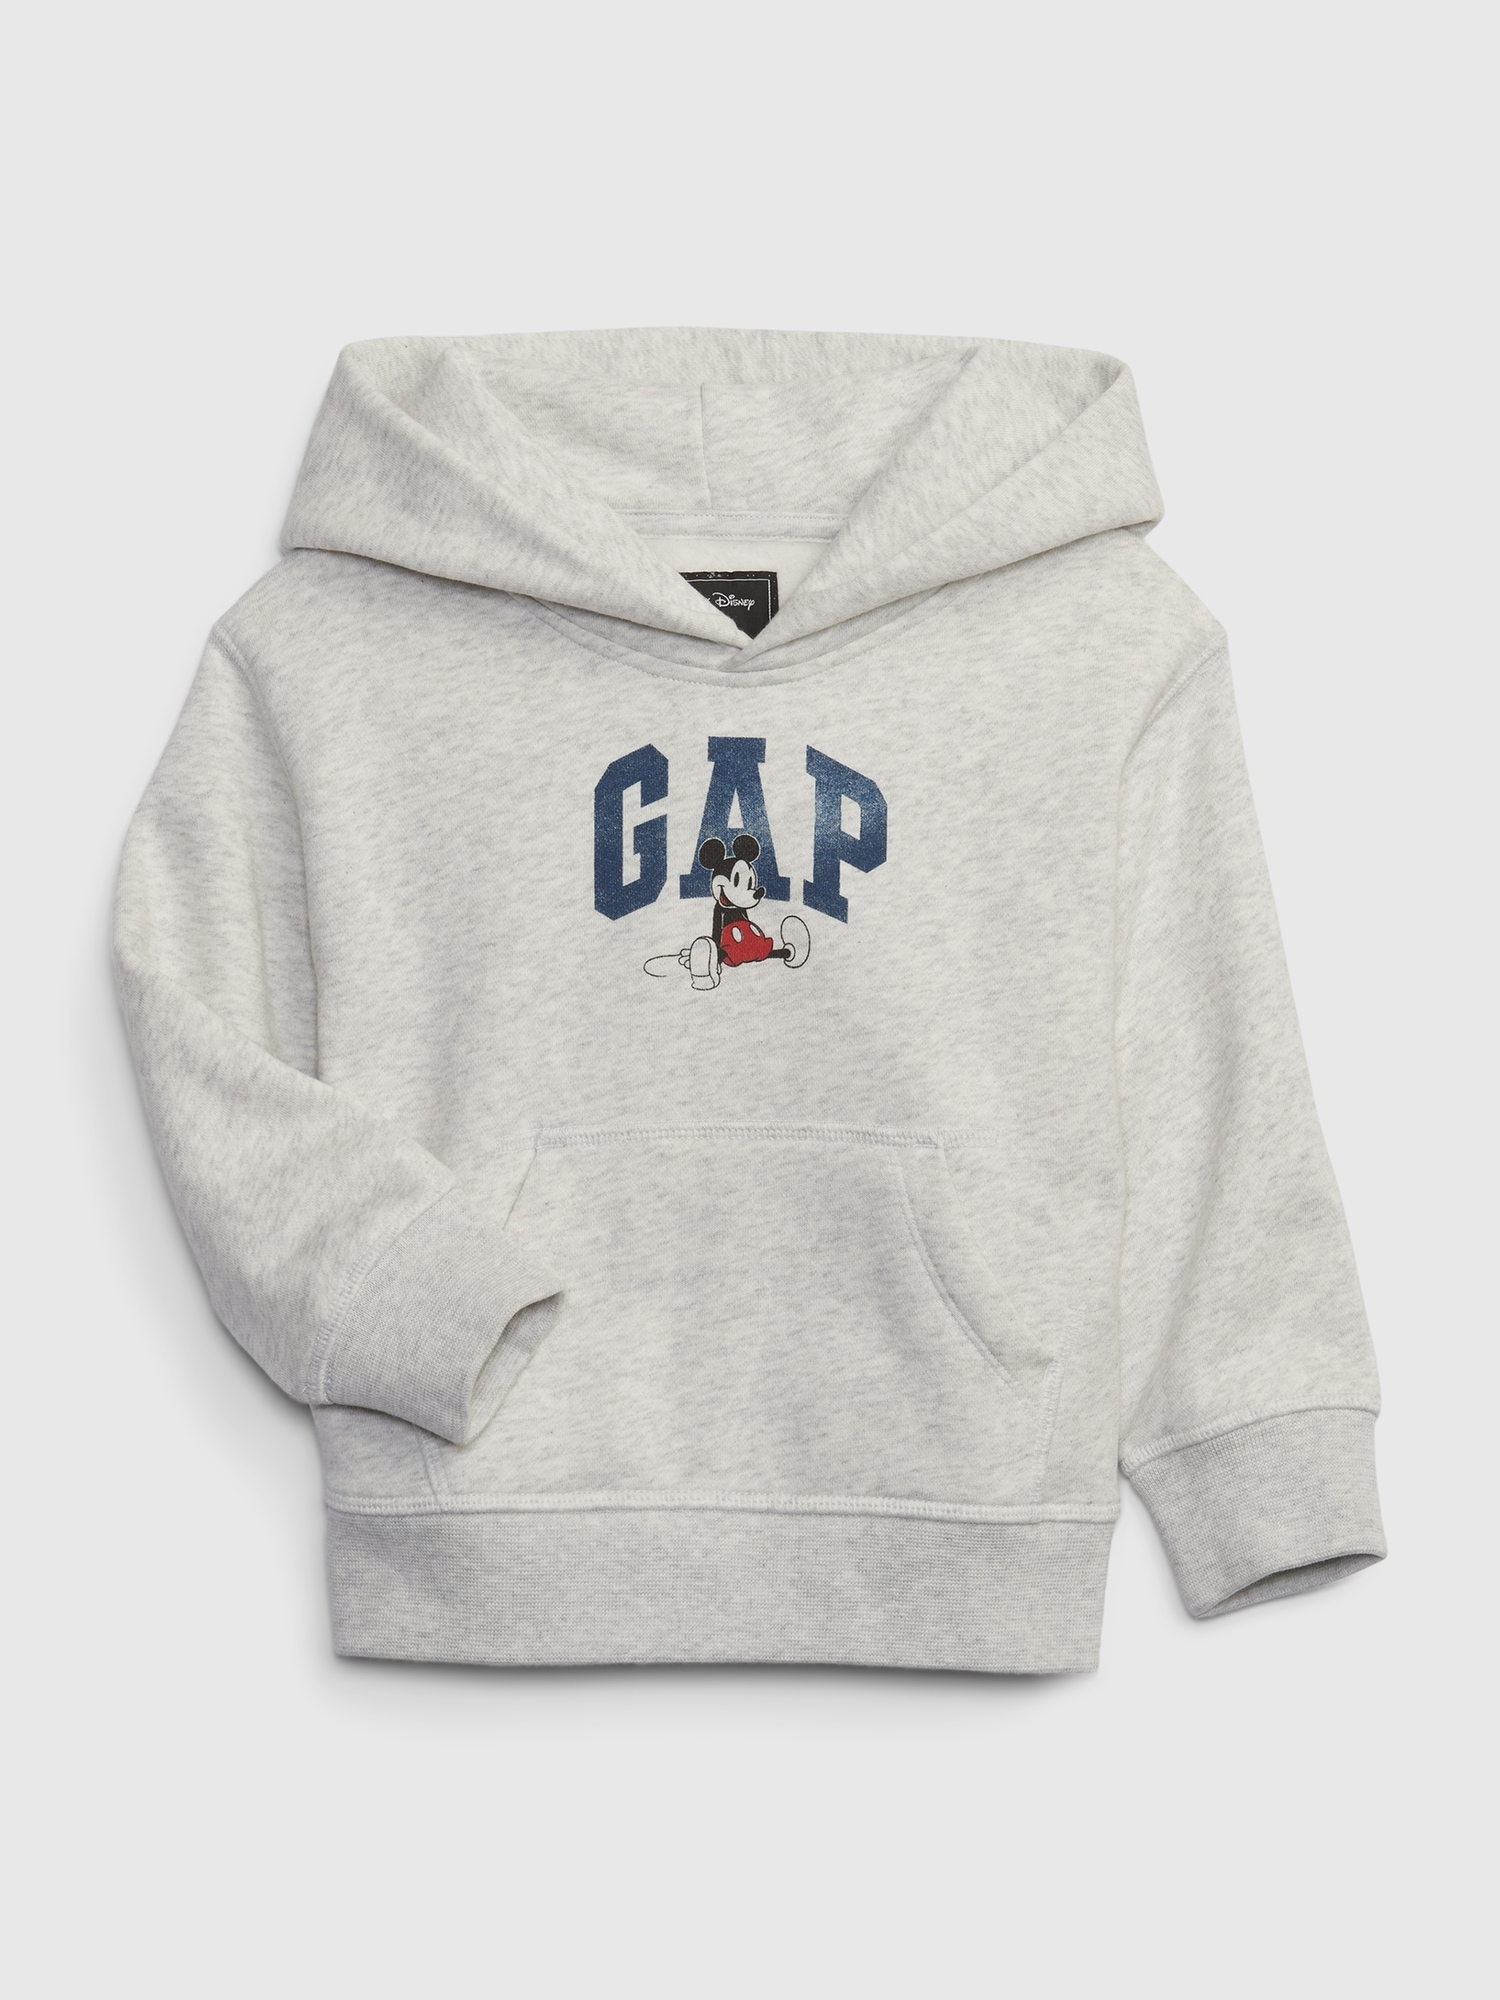 Toddler Gap x Disney Graphic Hoodie | Gap